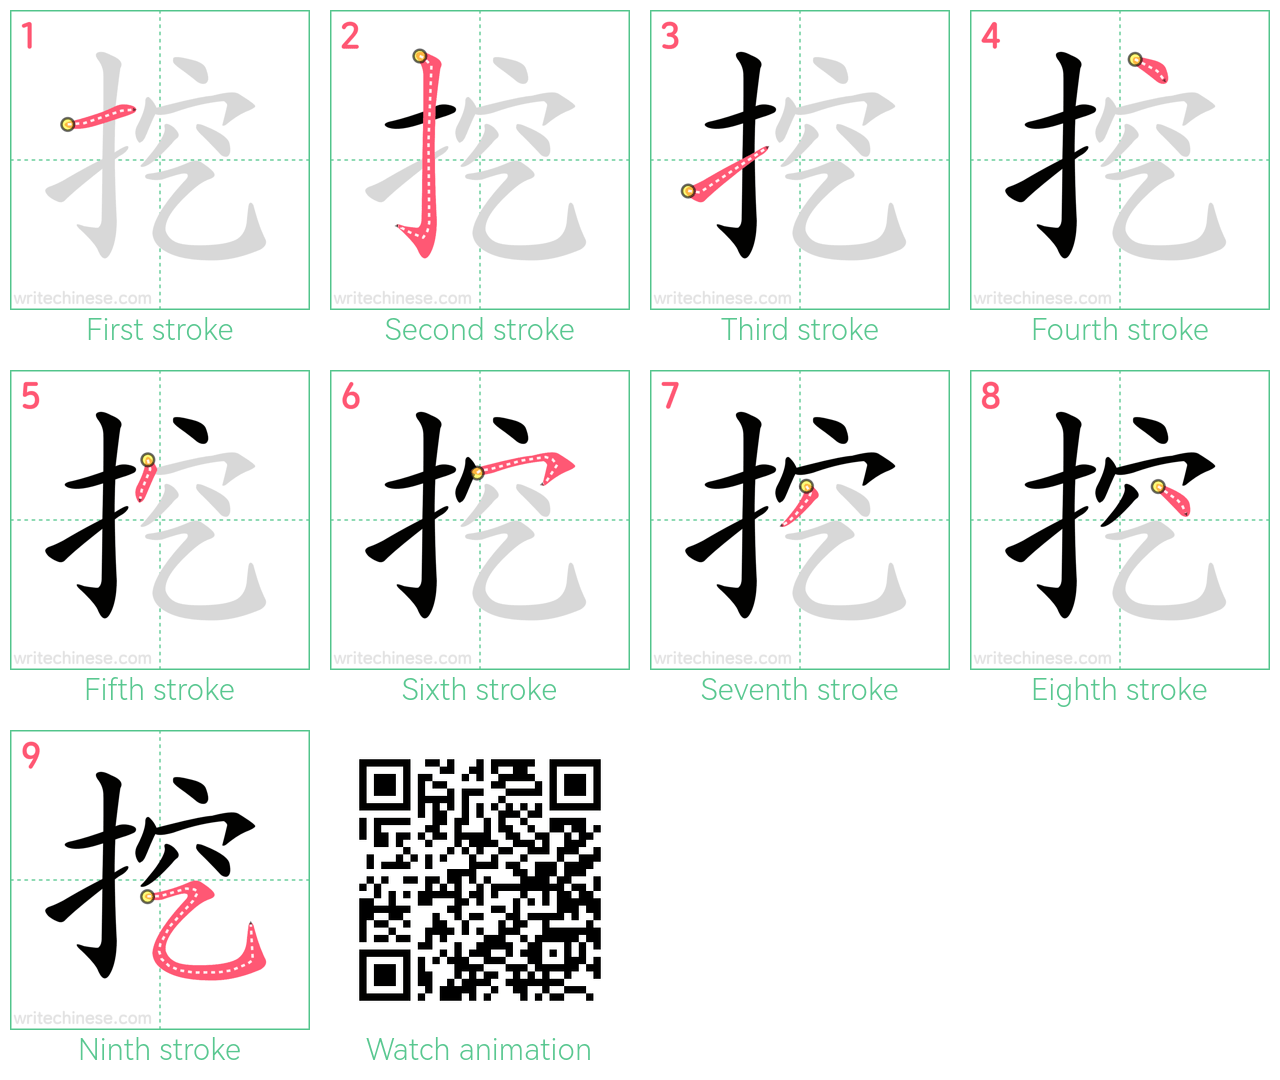 挖 step-by-step stroke order diagrams